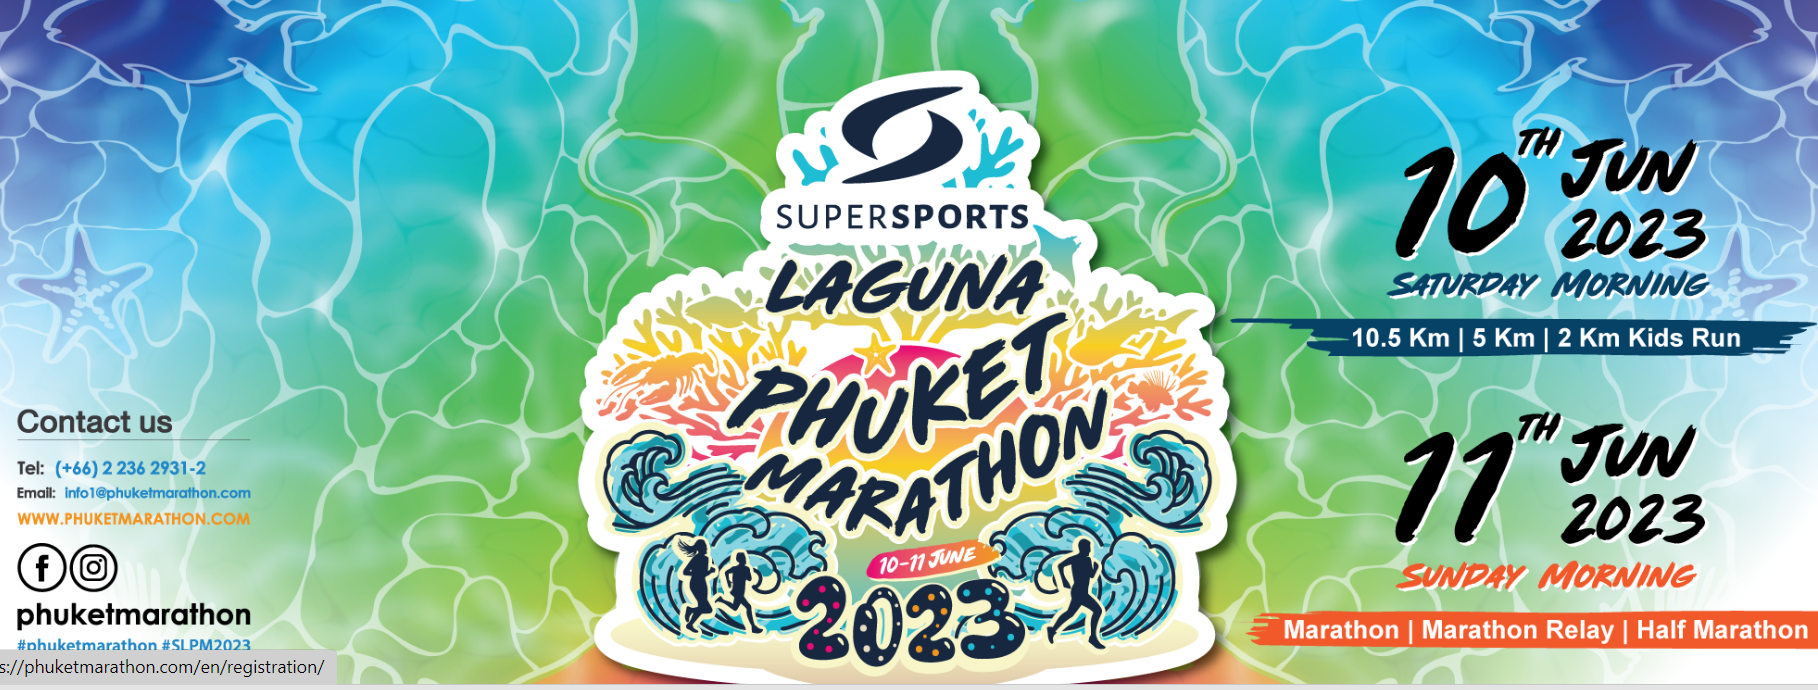 Более 8000 участников ожидают на соревнованиях ежегодного марафона в Лагуне